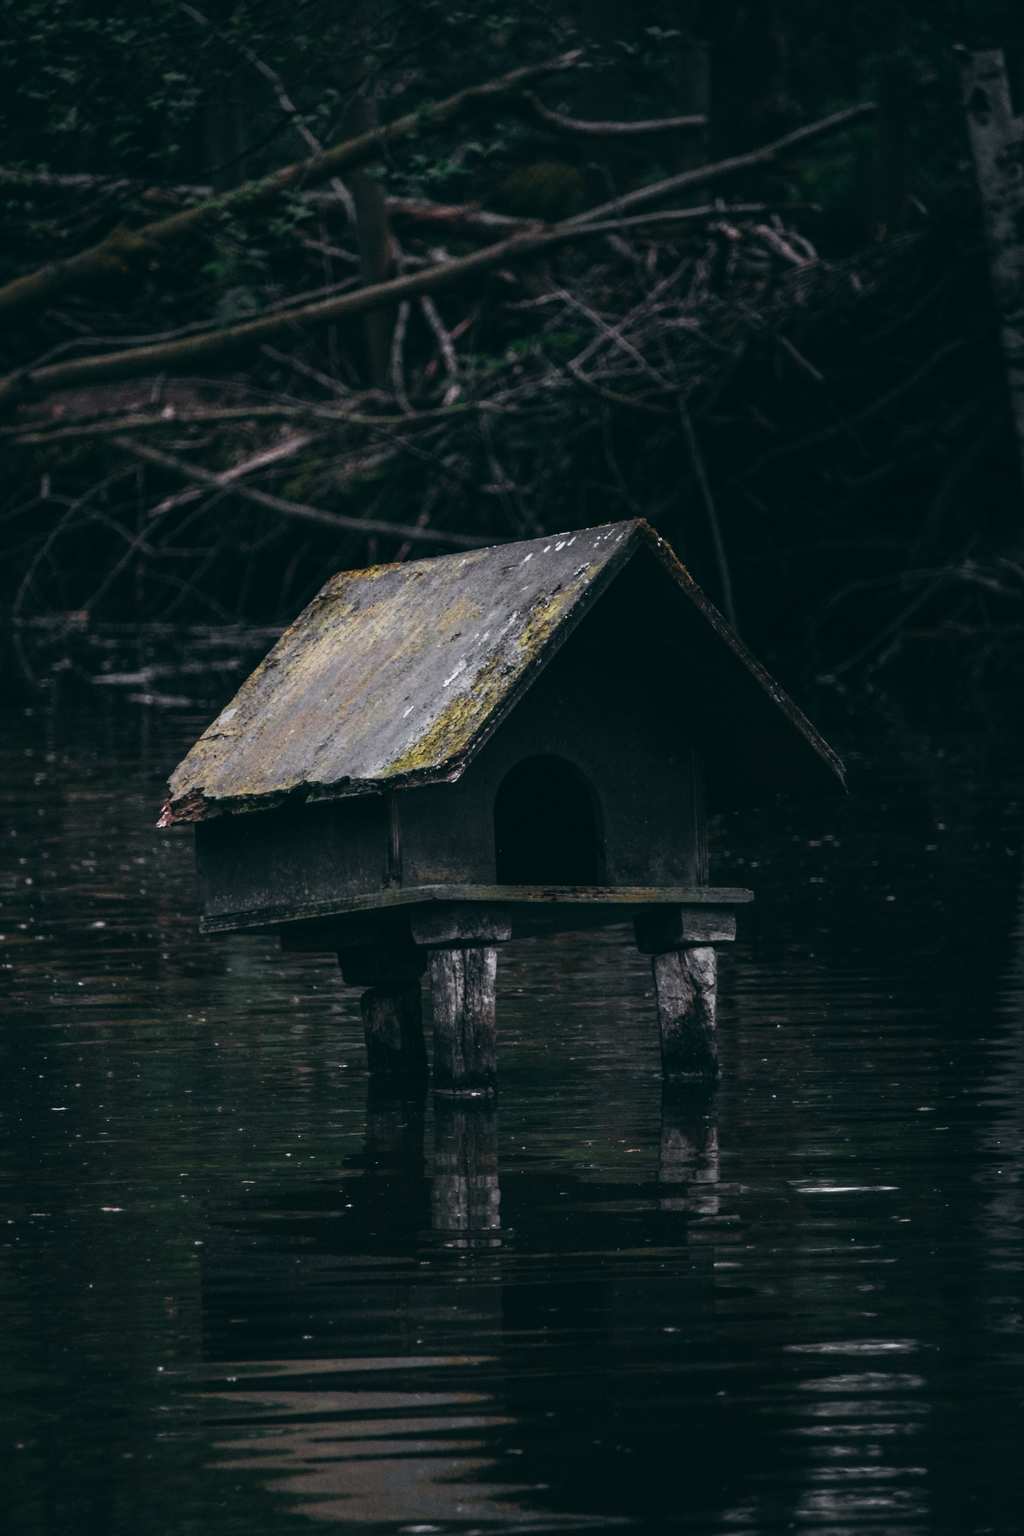 Eine kleine Holz-Hütte auf drei Beinen in einem See.